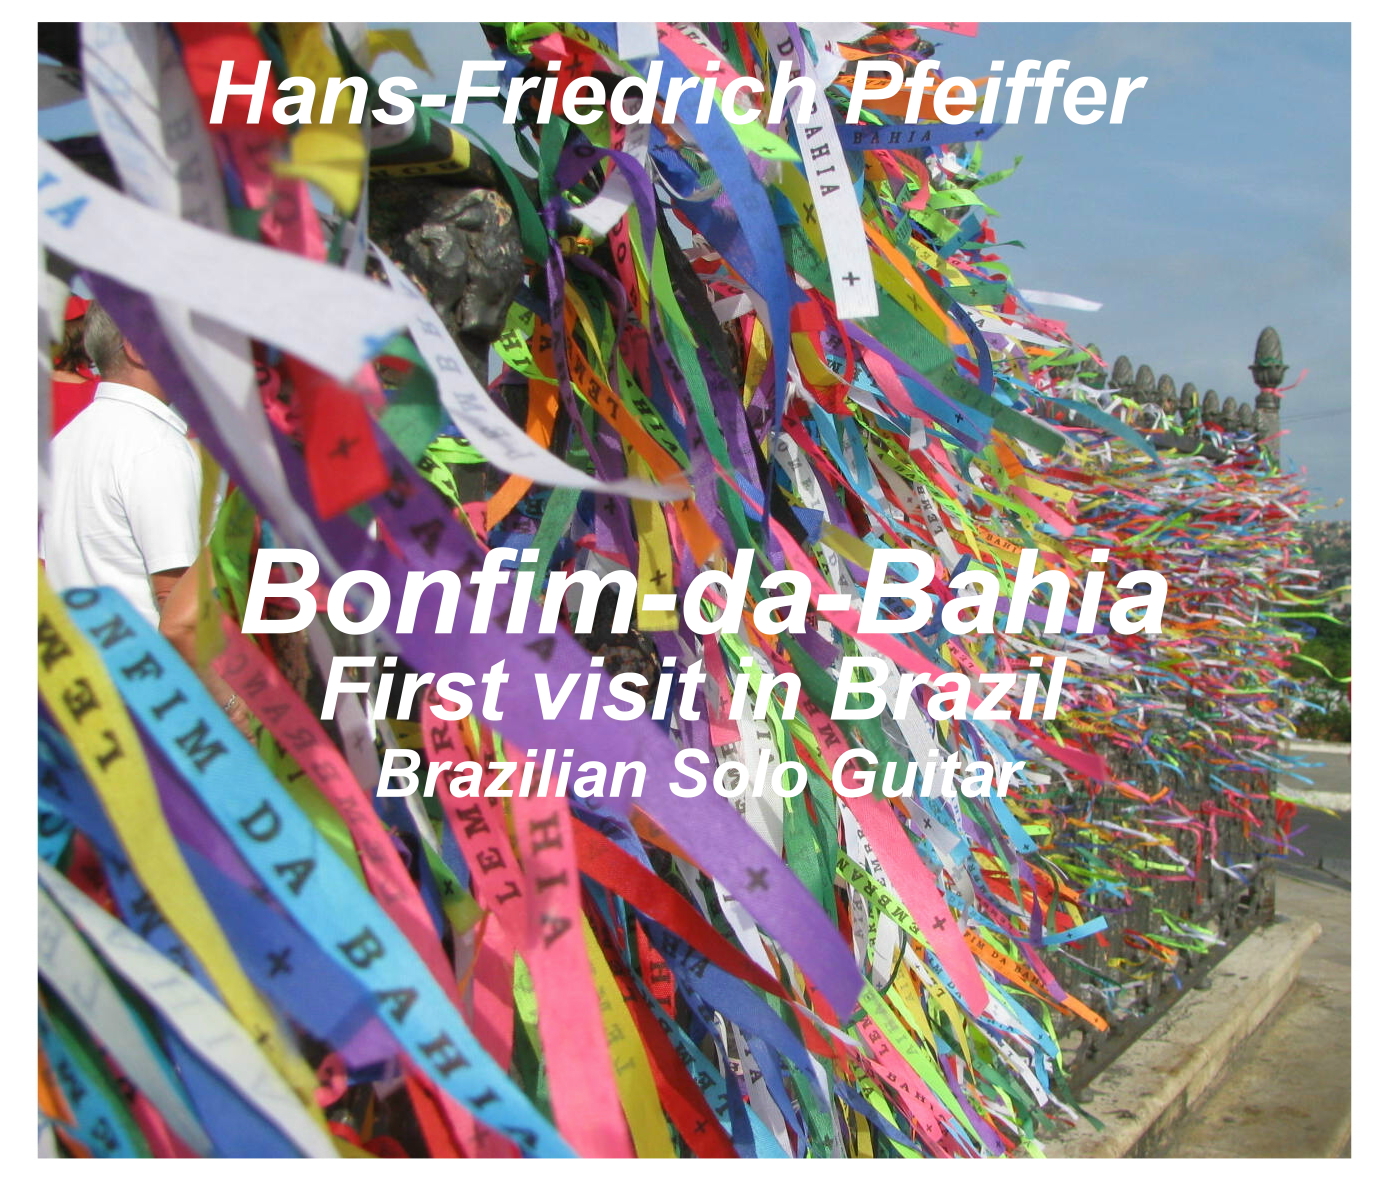 Bonfa-da-Bahia